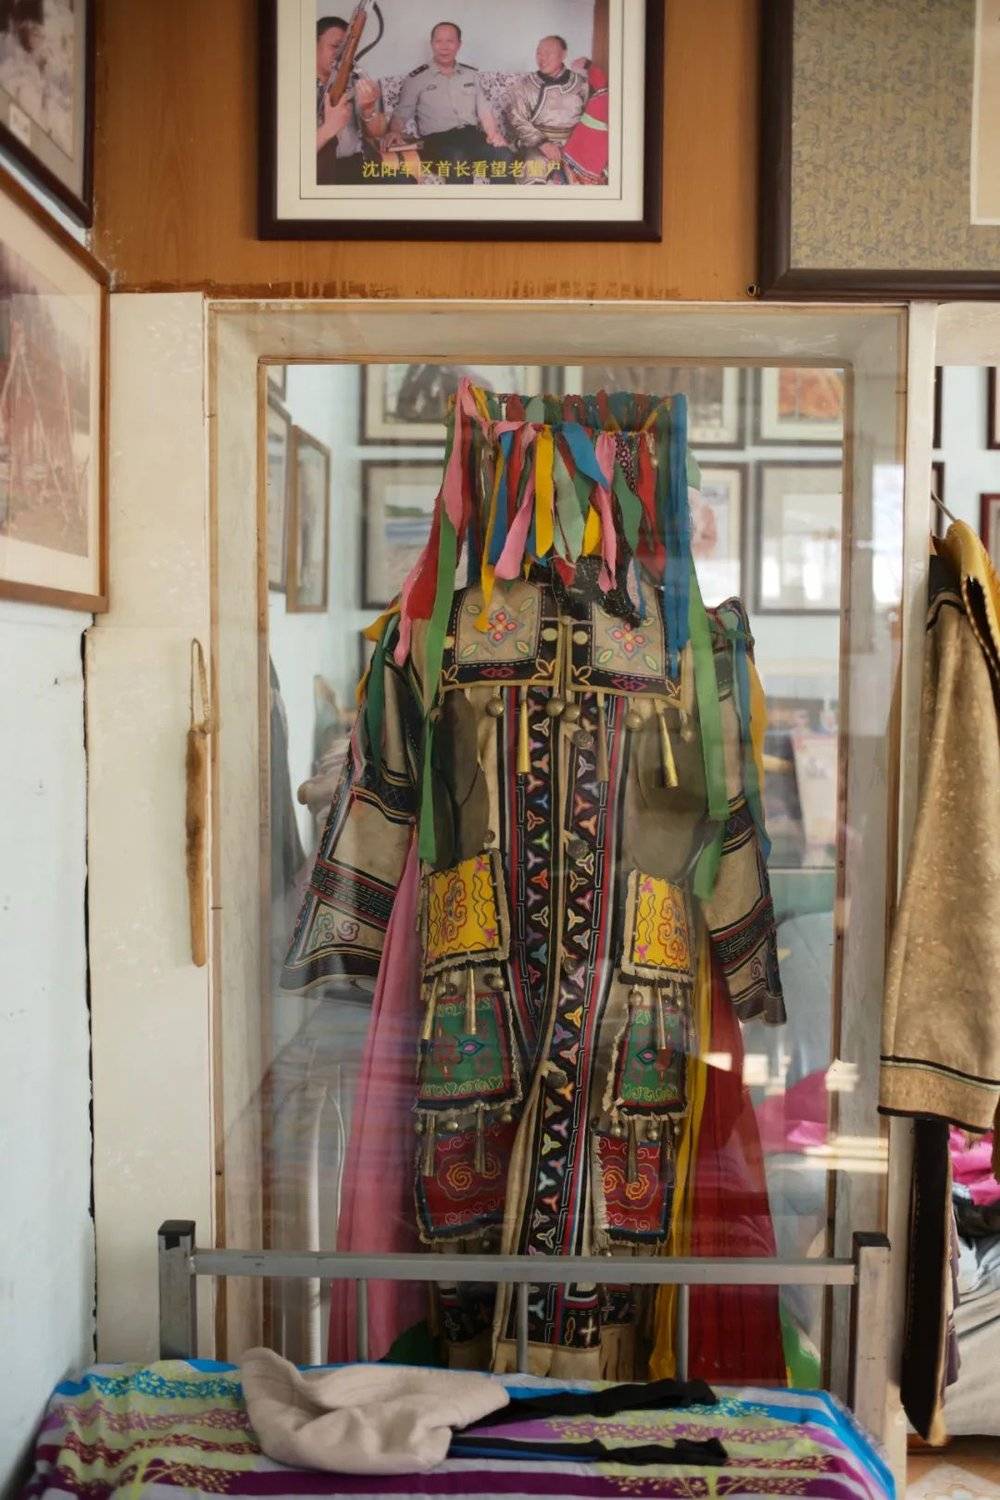 戈晓华亲手缝了三年的萨满服，现在挂在家中展示。<br>